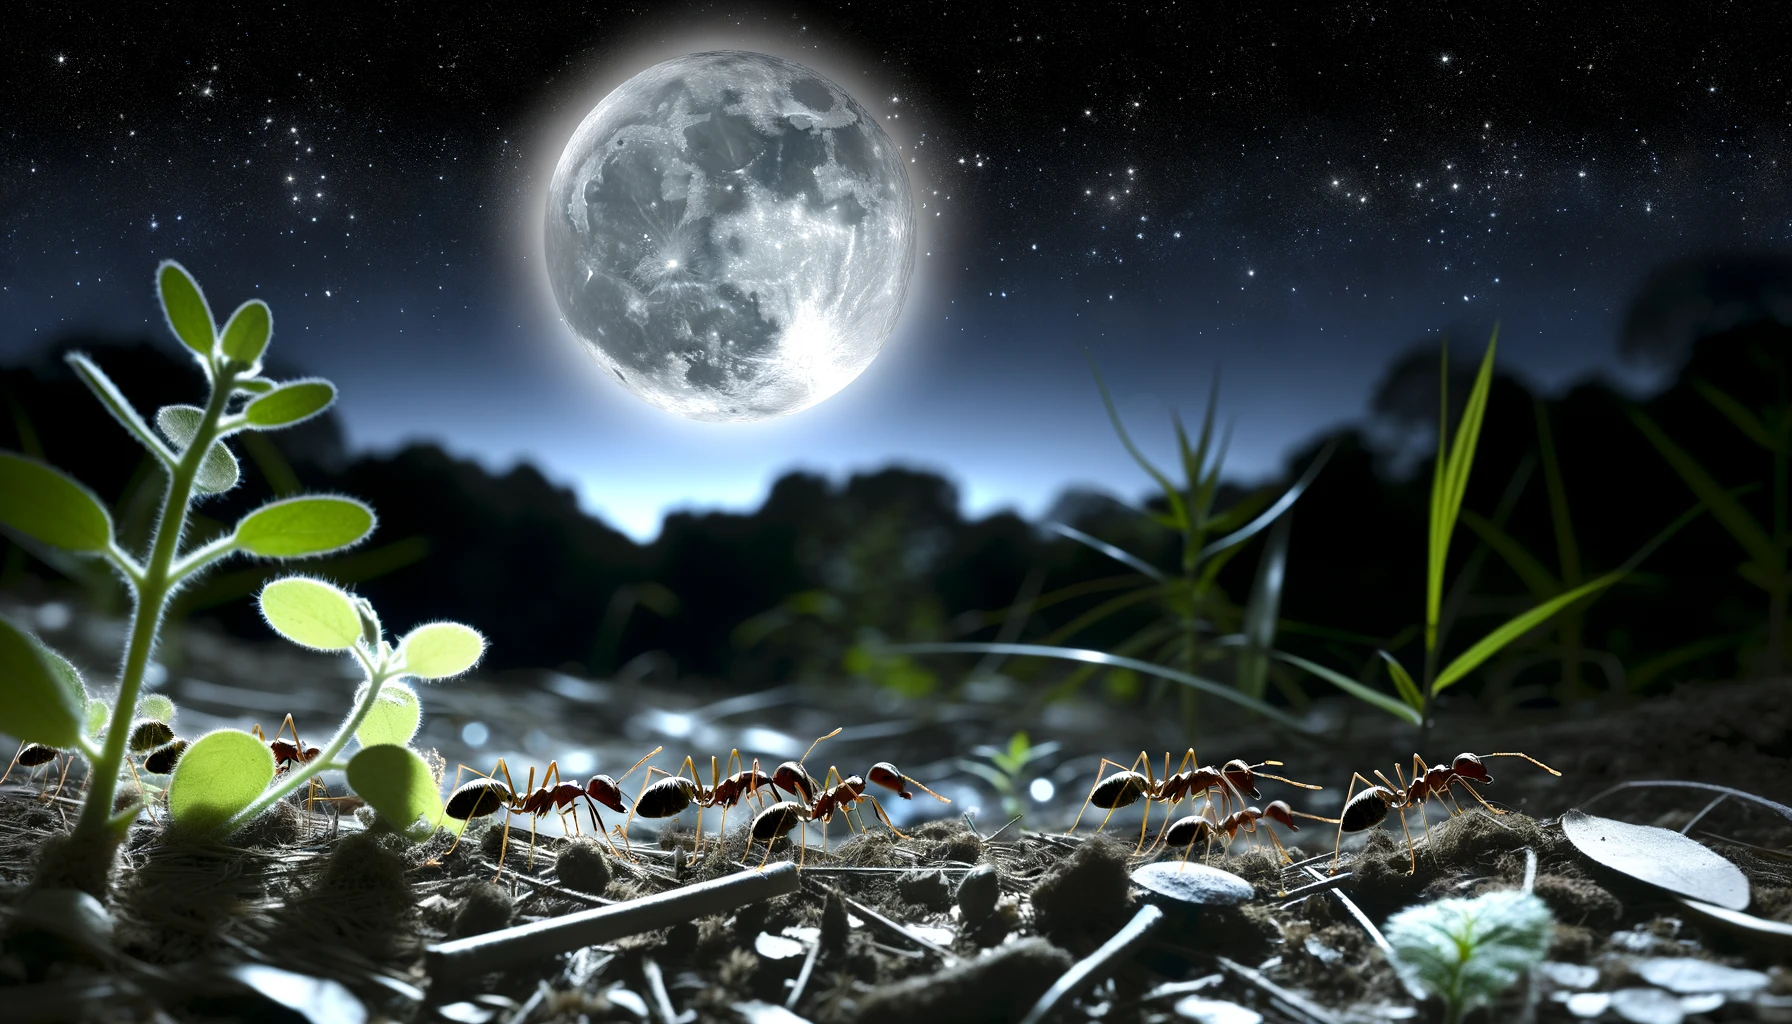 Ces fourmis nocturnes s'orientent grâce à la lumière polarisée de la Lune, même à très faible intensité ! © Dall-E, ChatGPT4, Open AI (illustration générée par IA)